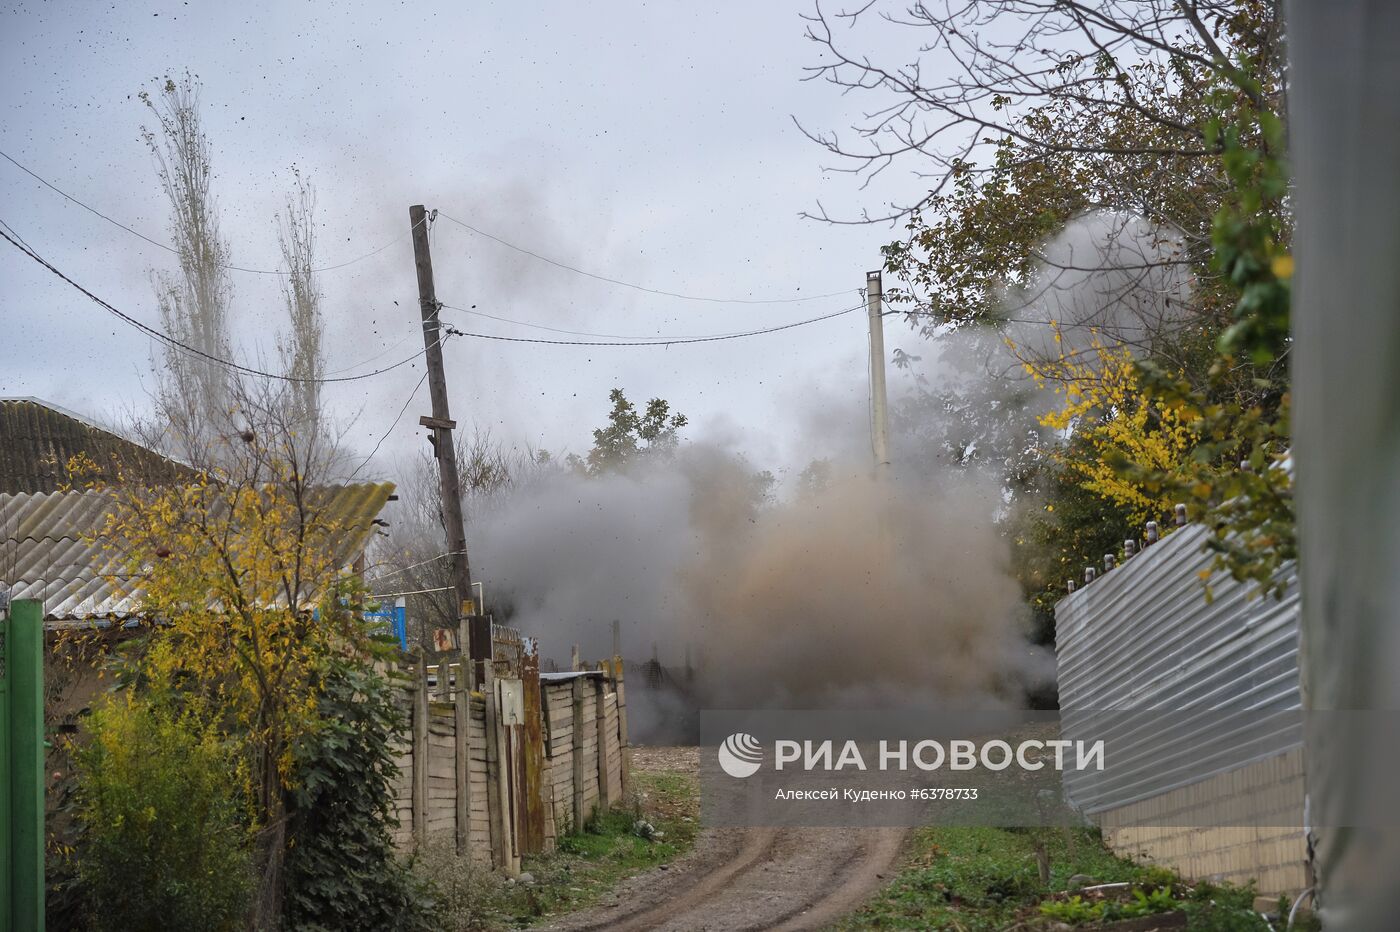 Обезвреживание боеприпасов в Тертерском районе Азербайджана